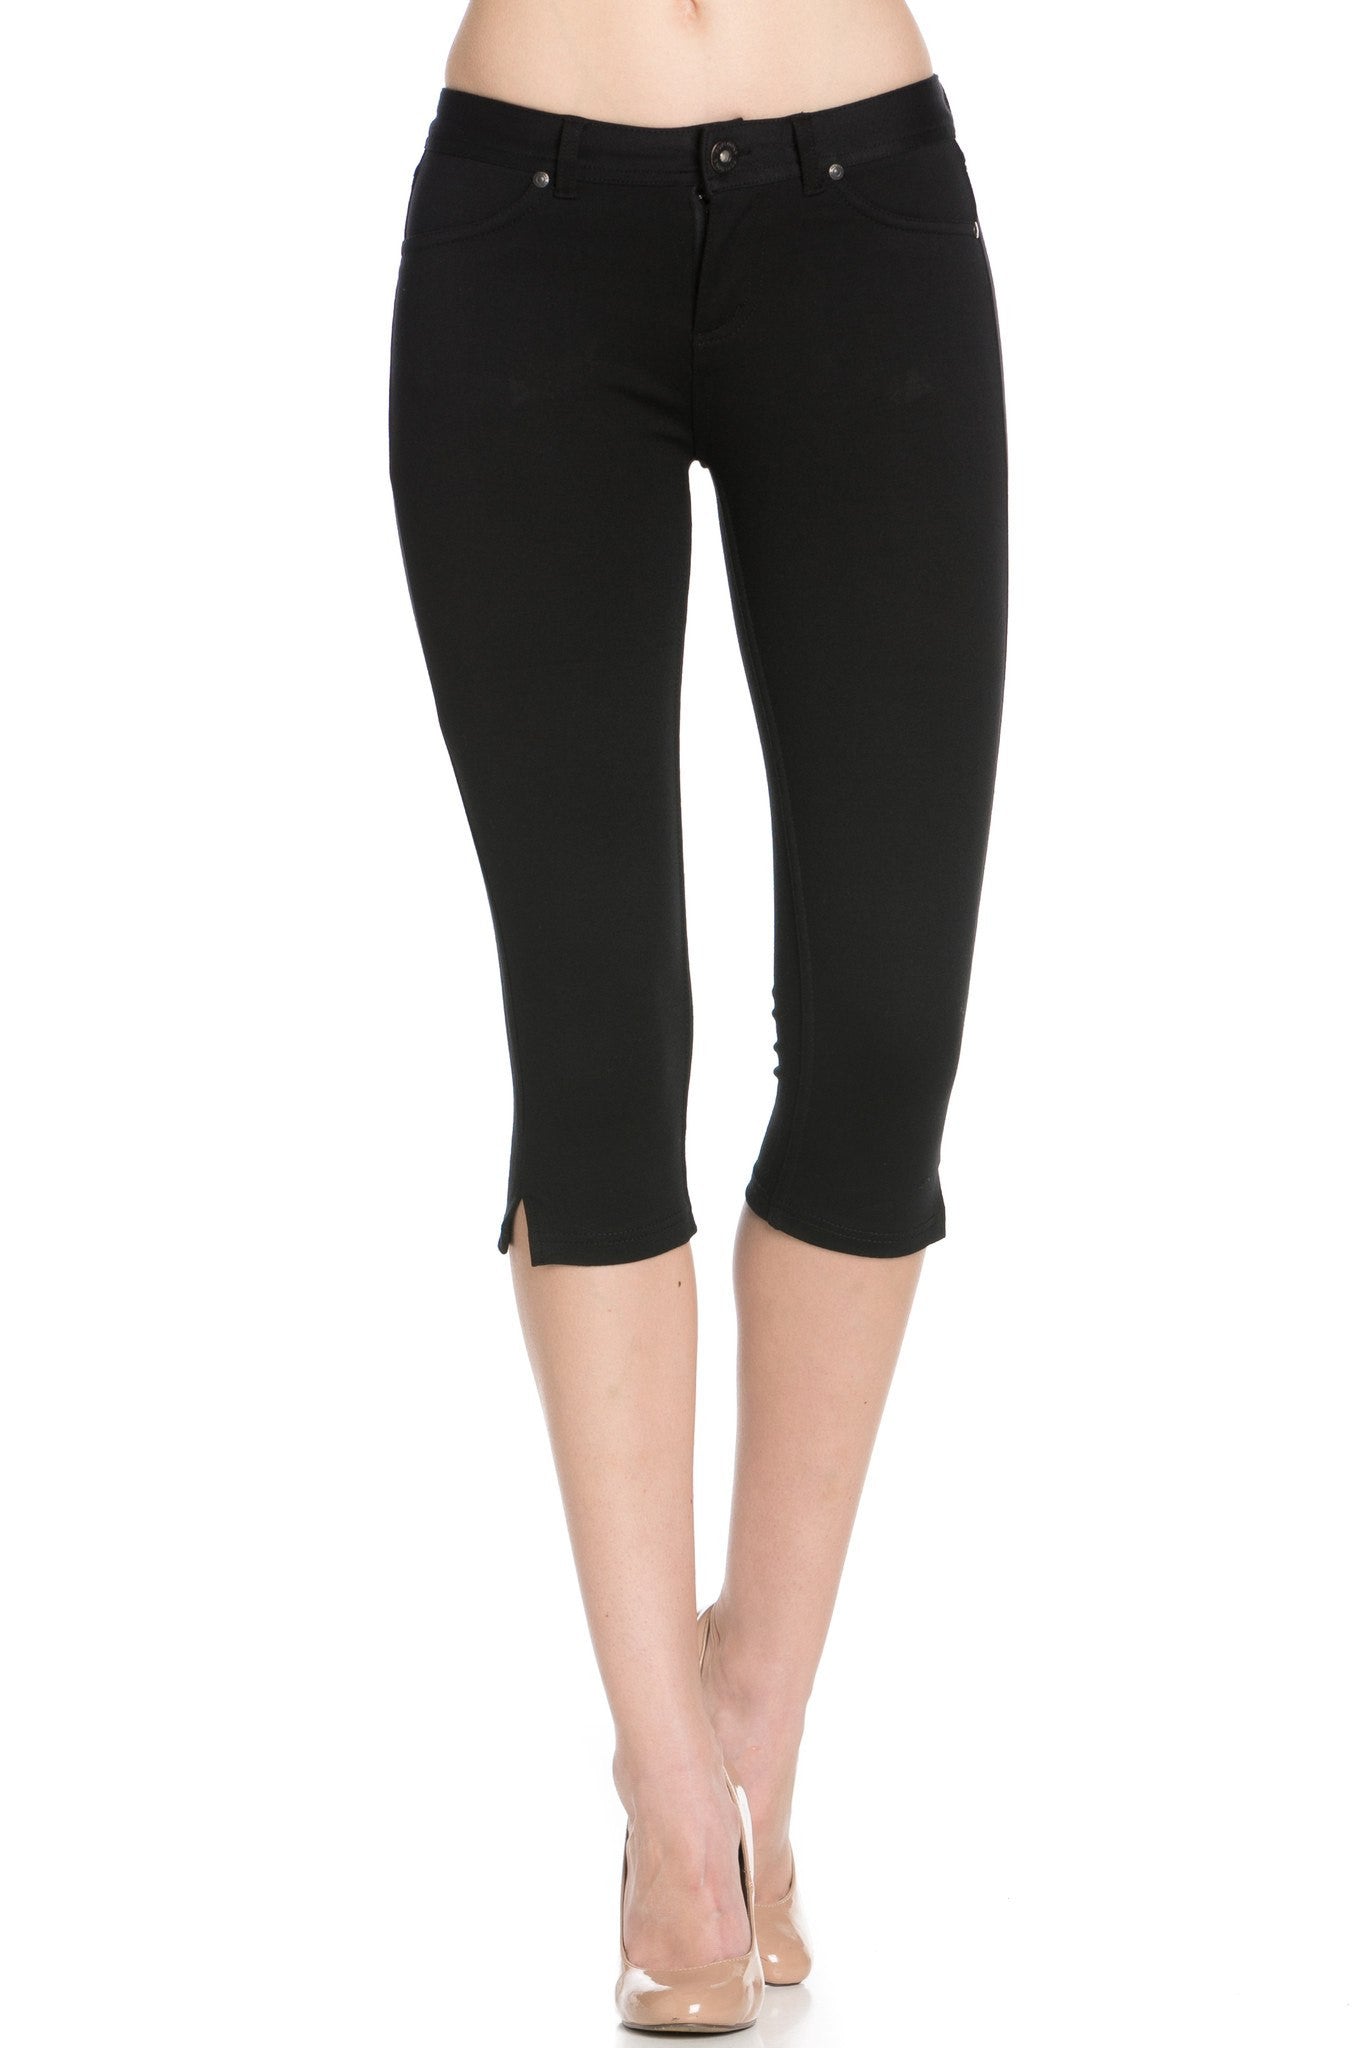 Poplooks Women's 4 Way Stretchy Ponte Knit Capri Skinny Jeans (Black)